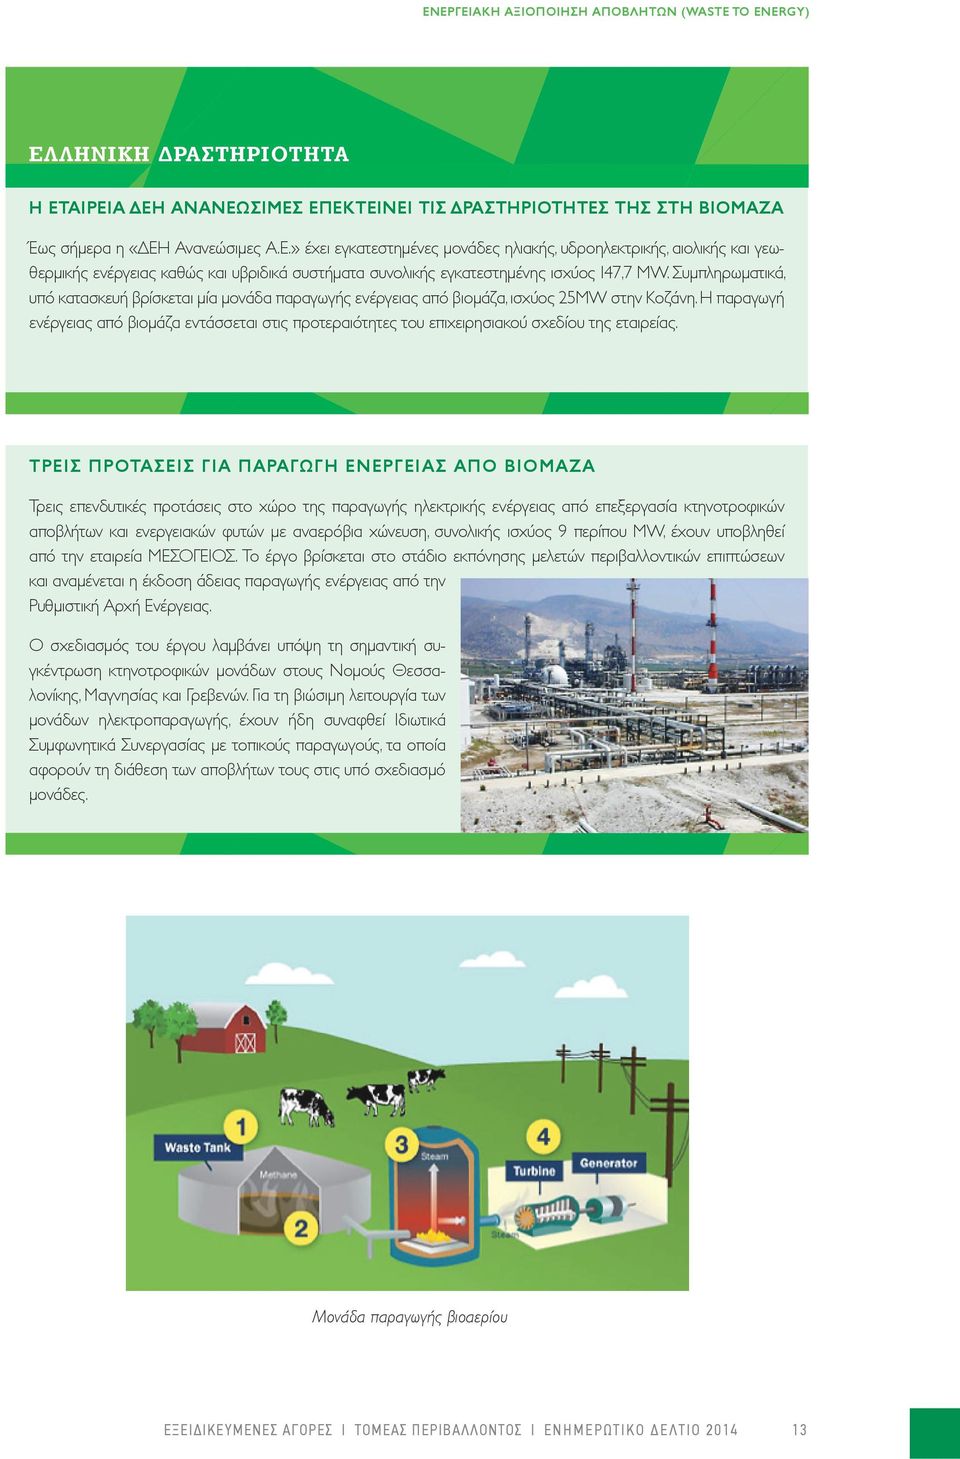 Η παραγωγή ενέργειας από βιομάζα εντάσσεται στις προτεραιότητες του επιχειρησιακού σχεδίου της εταιρείας.